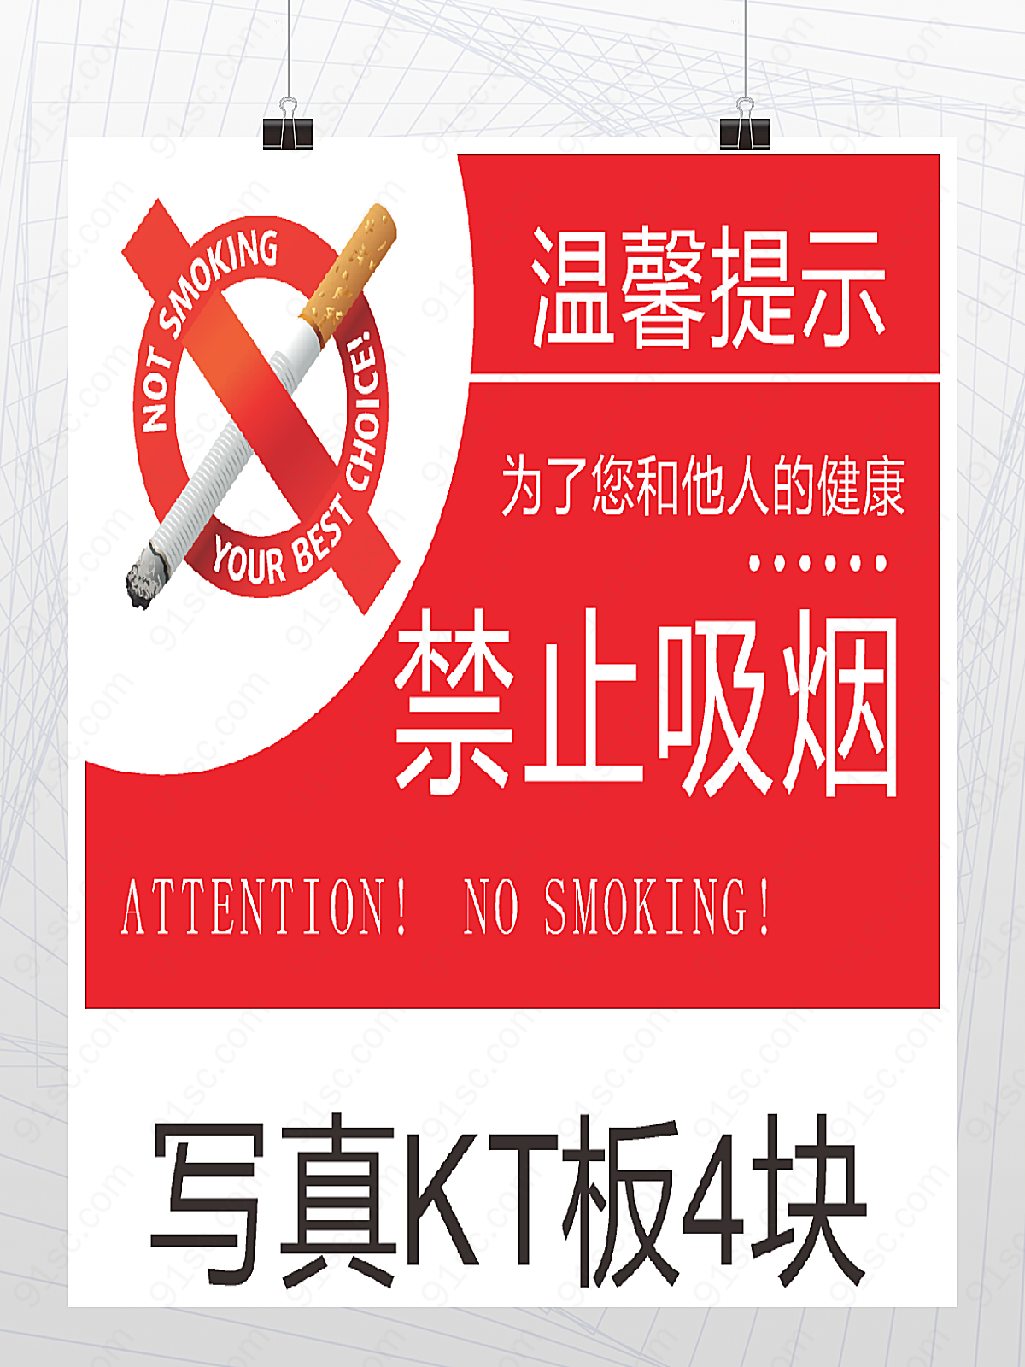 溫馨提示:禁止吸烟